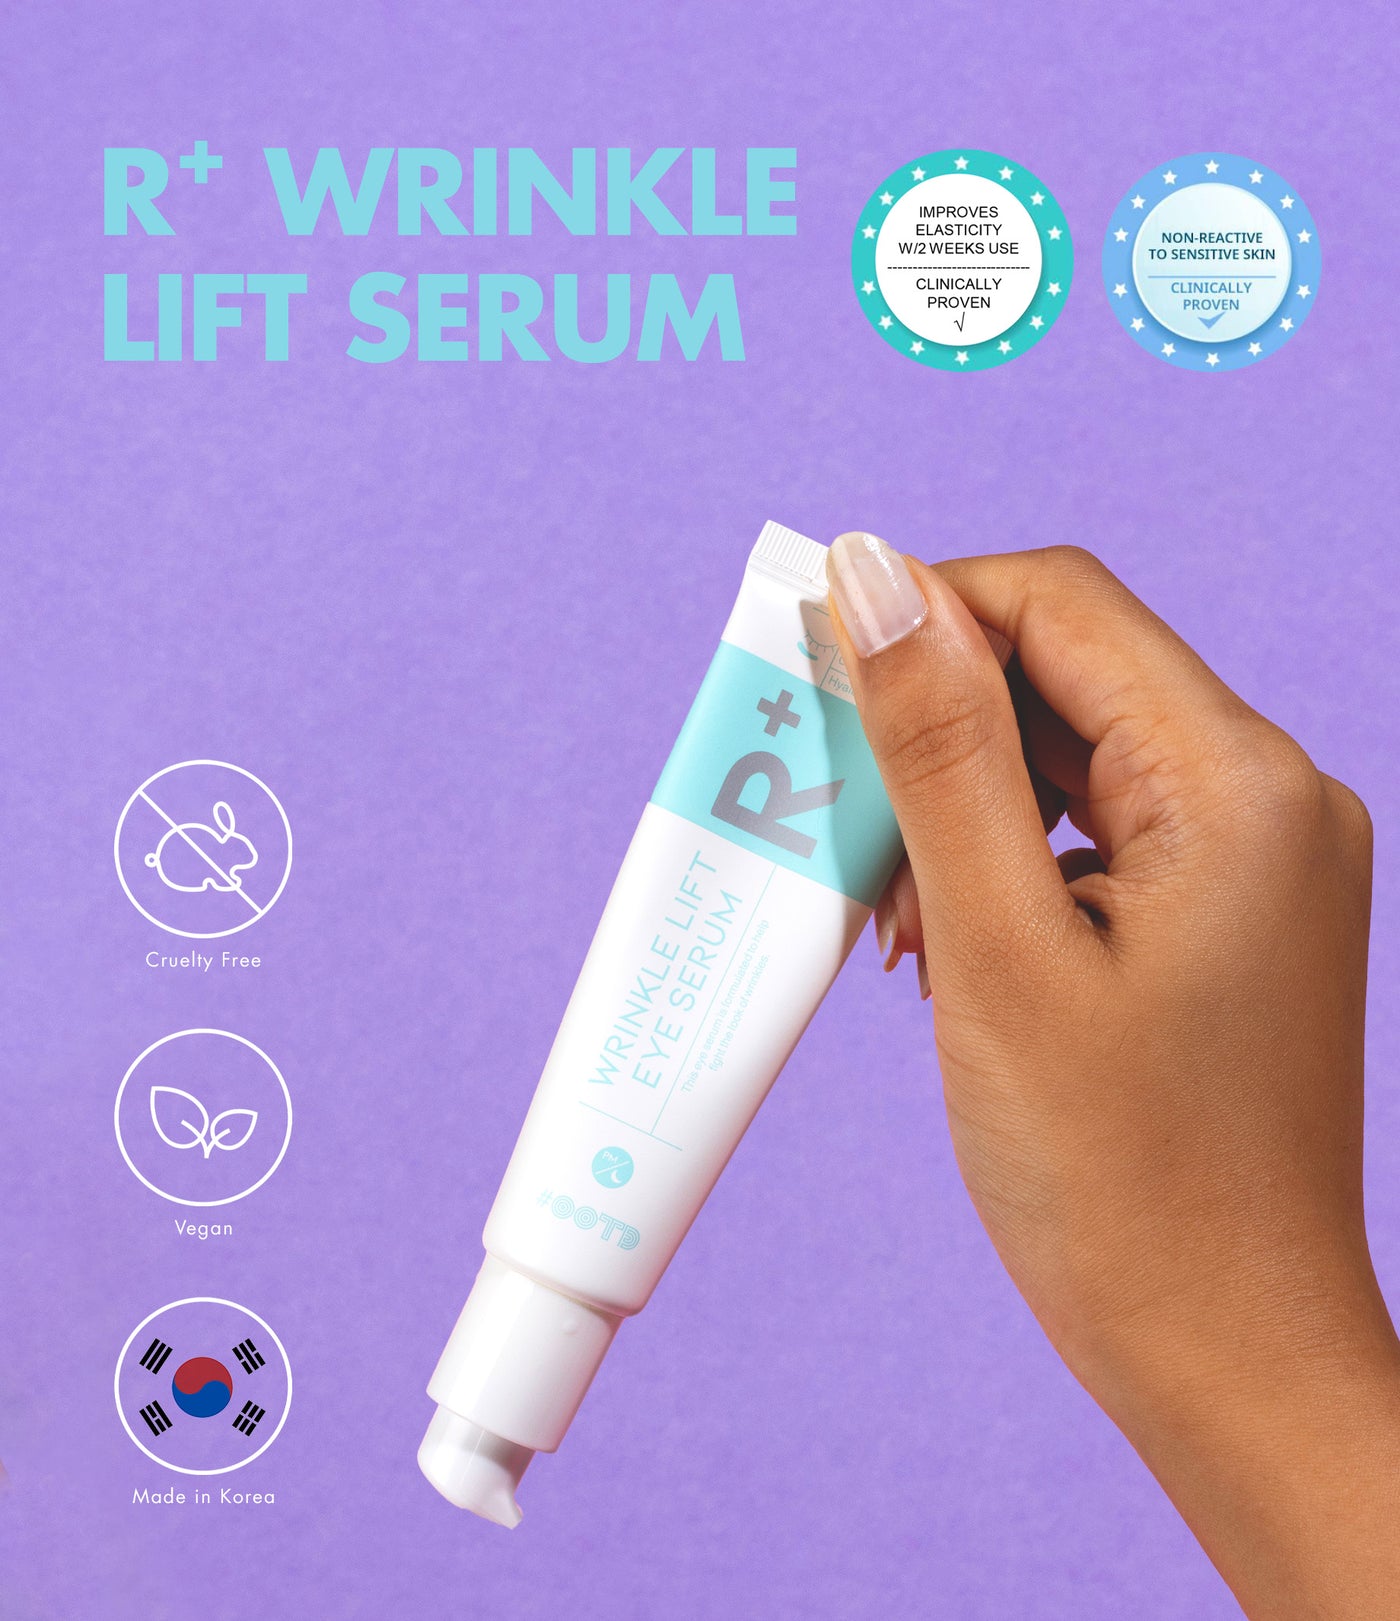 OOTD Wrinkle Lift Eye Serum (R+)